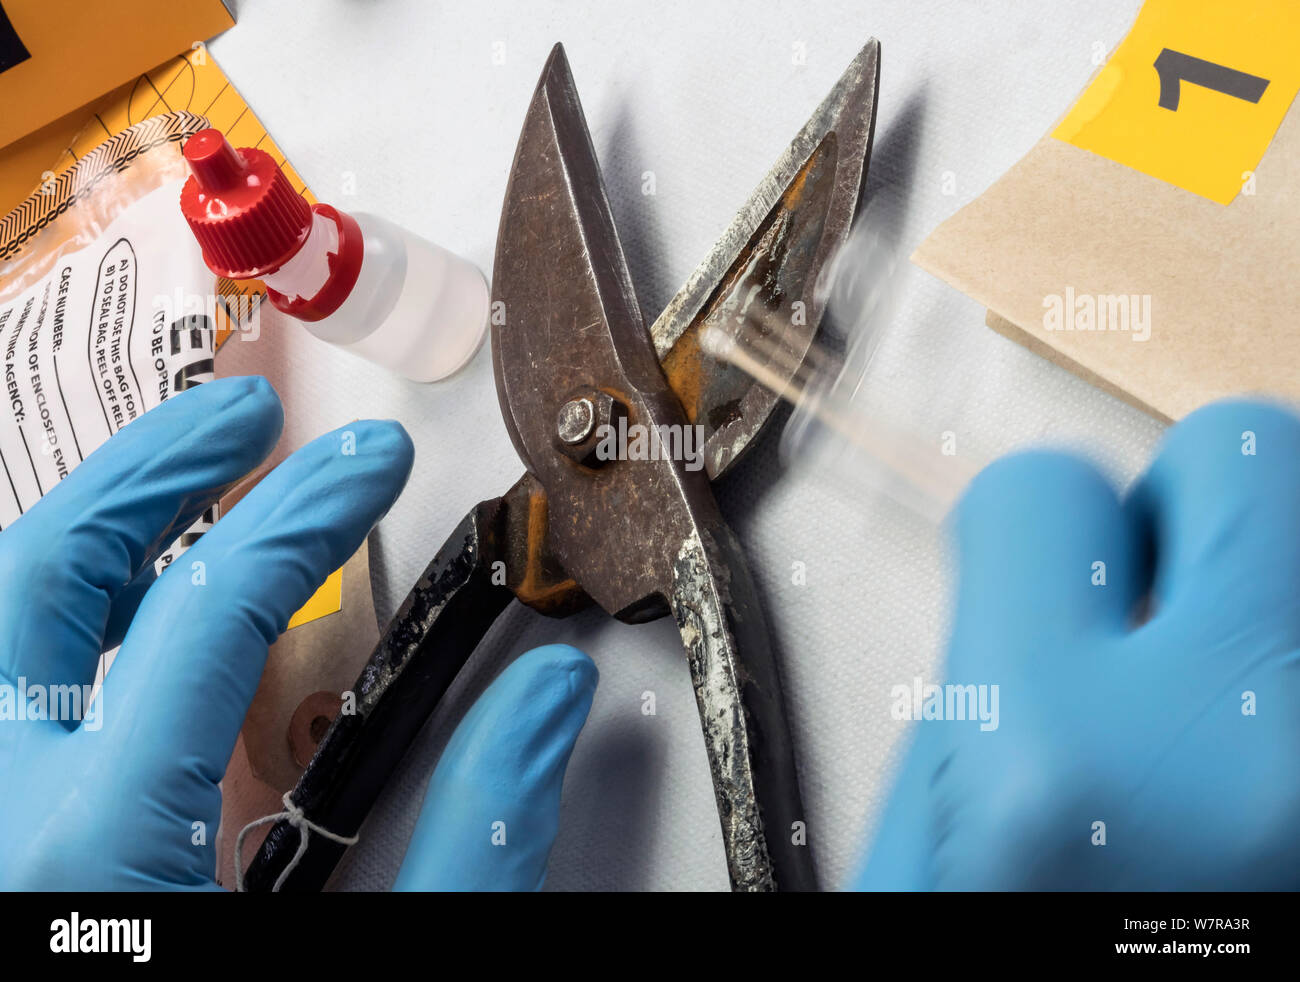 Un científico de la policía extrae una muestra de ADN de unas pinzas en un laboratorio de delincuencia, imagen conceptual Foto de stock